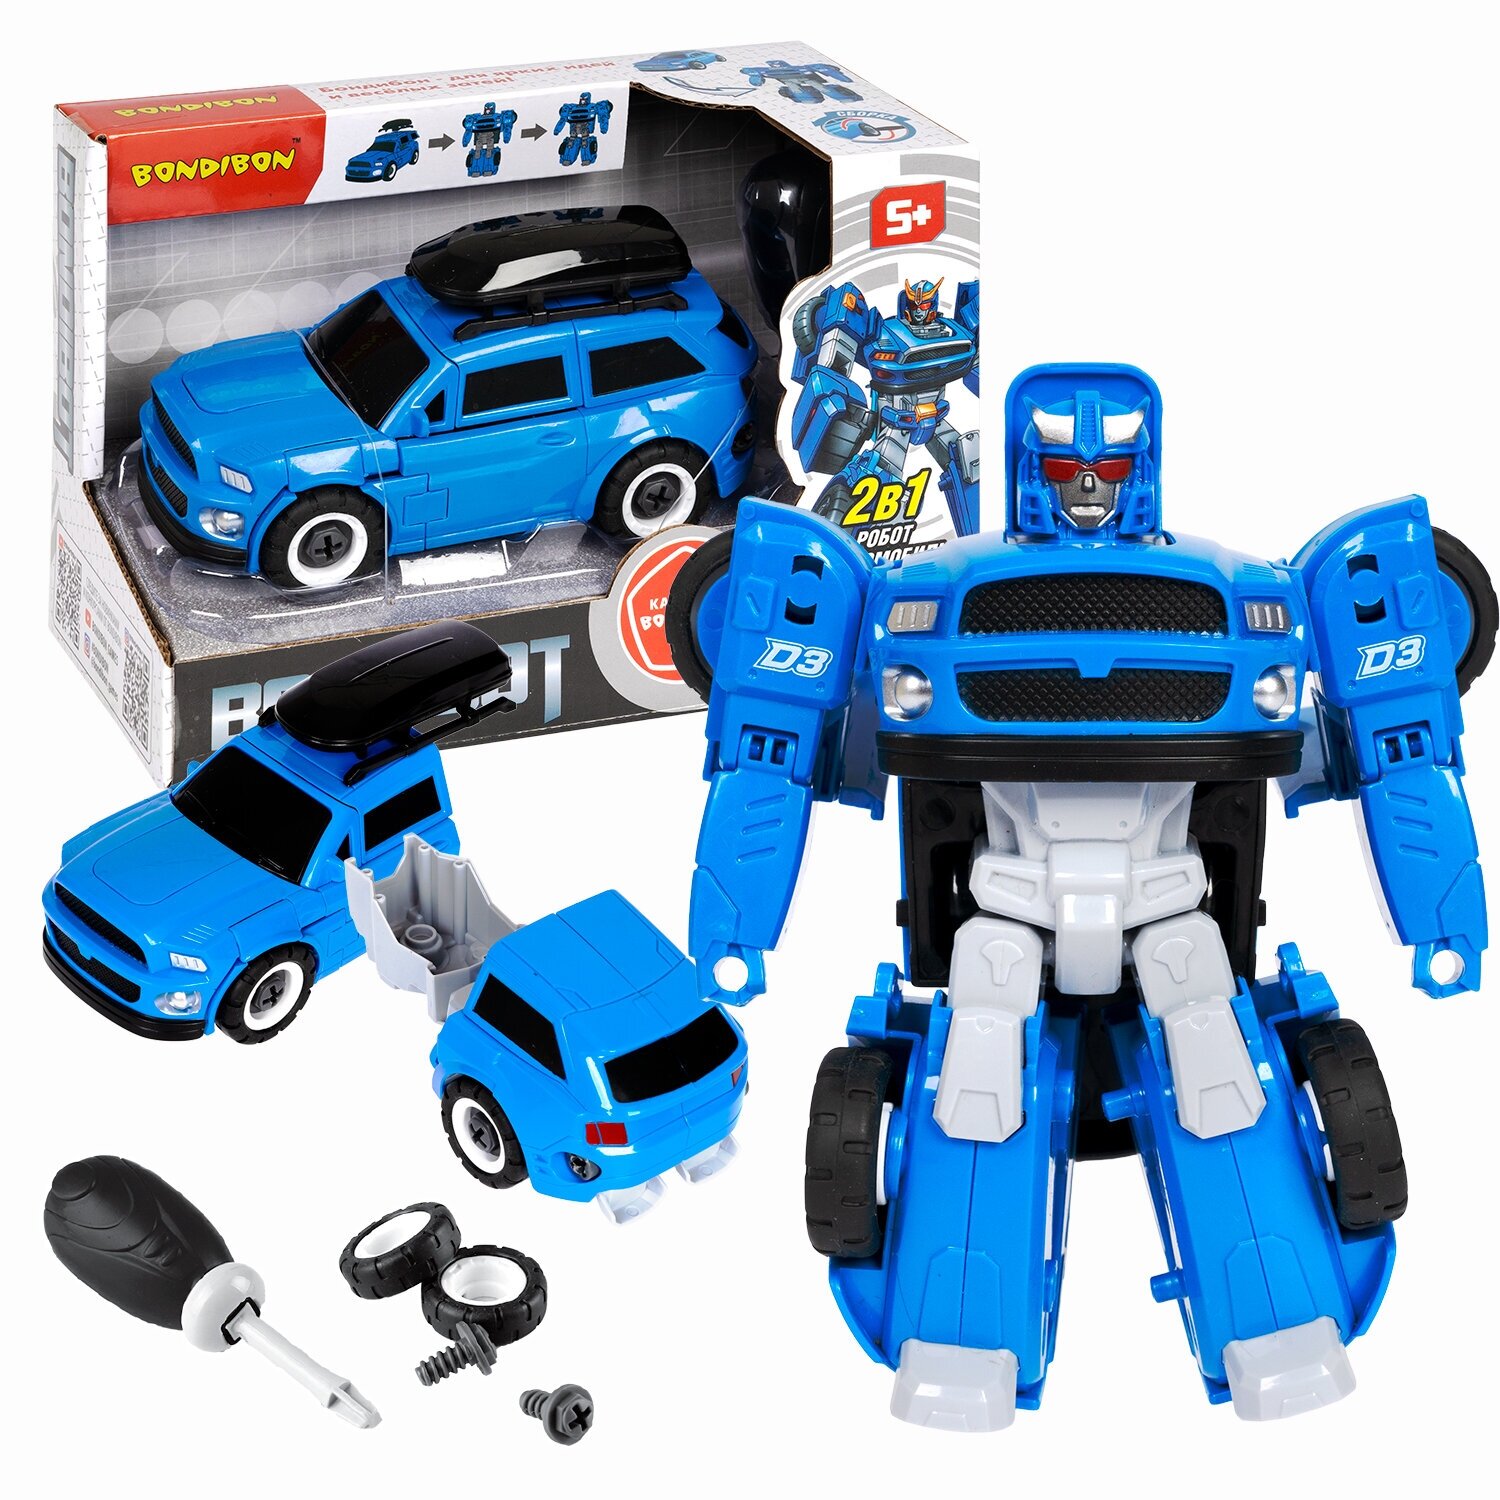 Трансформер BONDIBOT 2в1 робот-автомобиль с отвёрткой, джип, синий, с багажником Bondibon